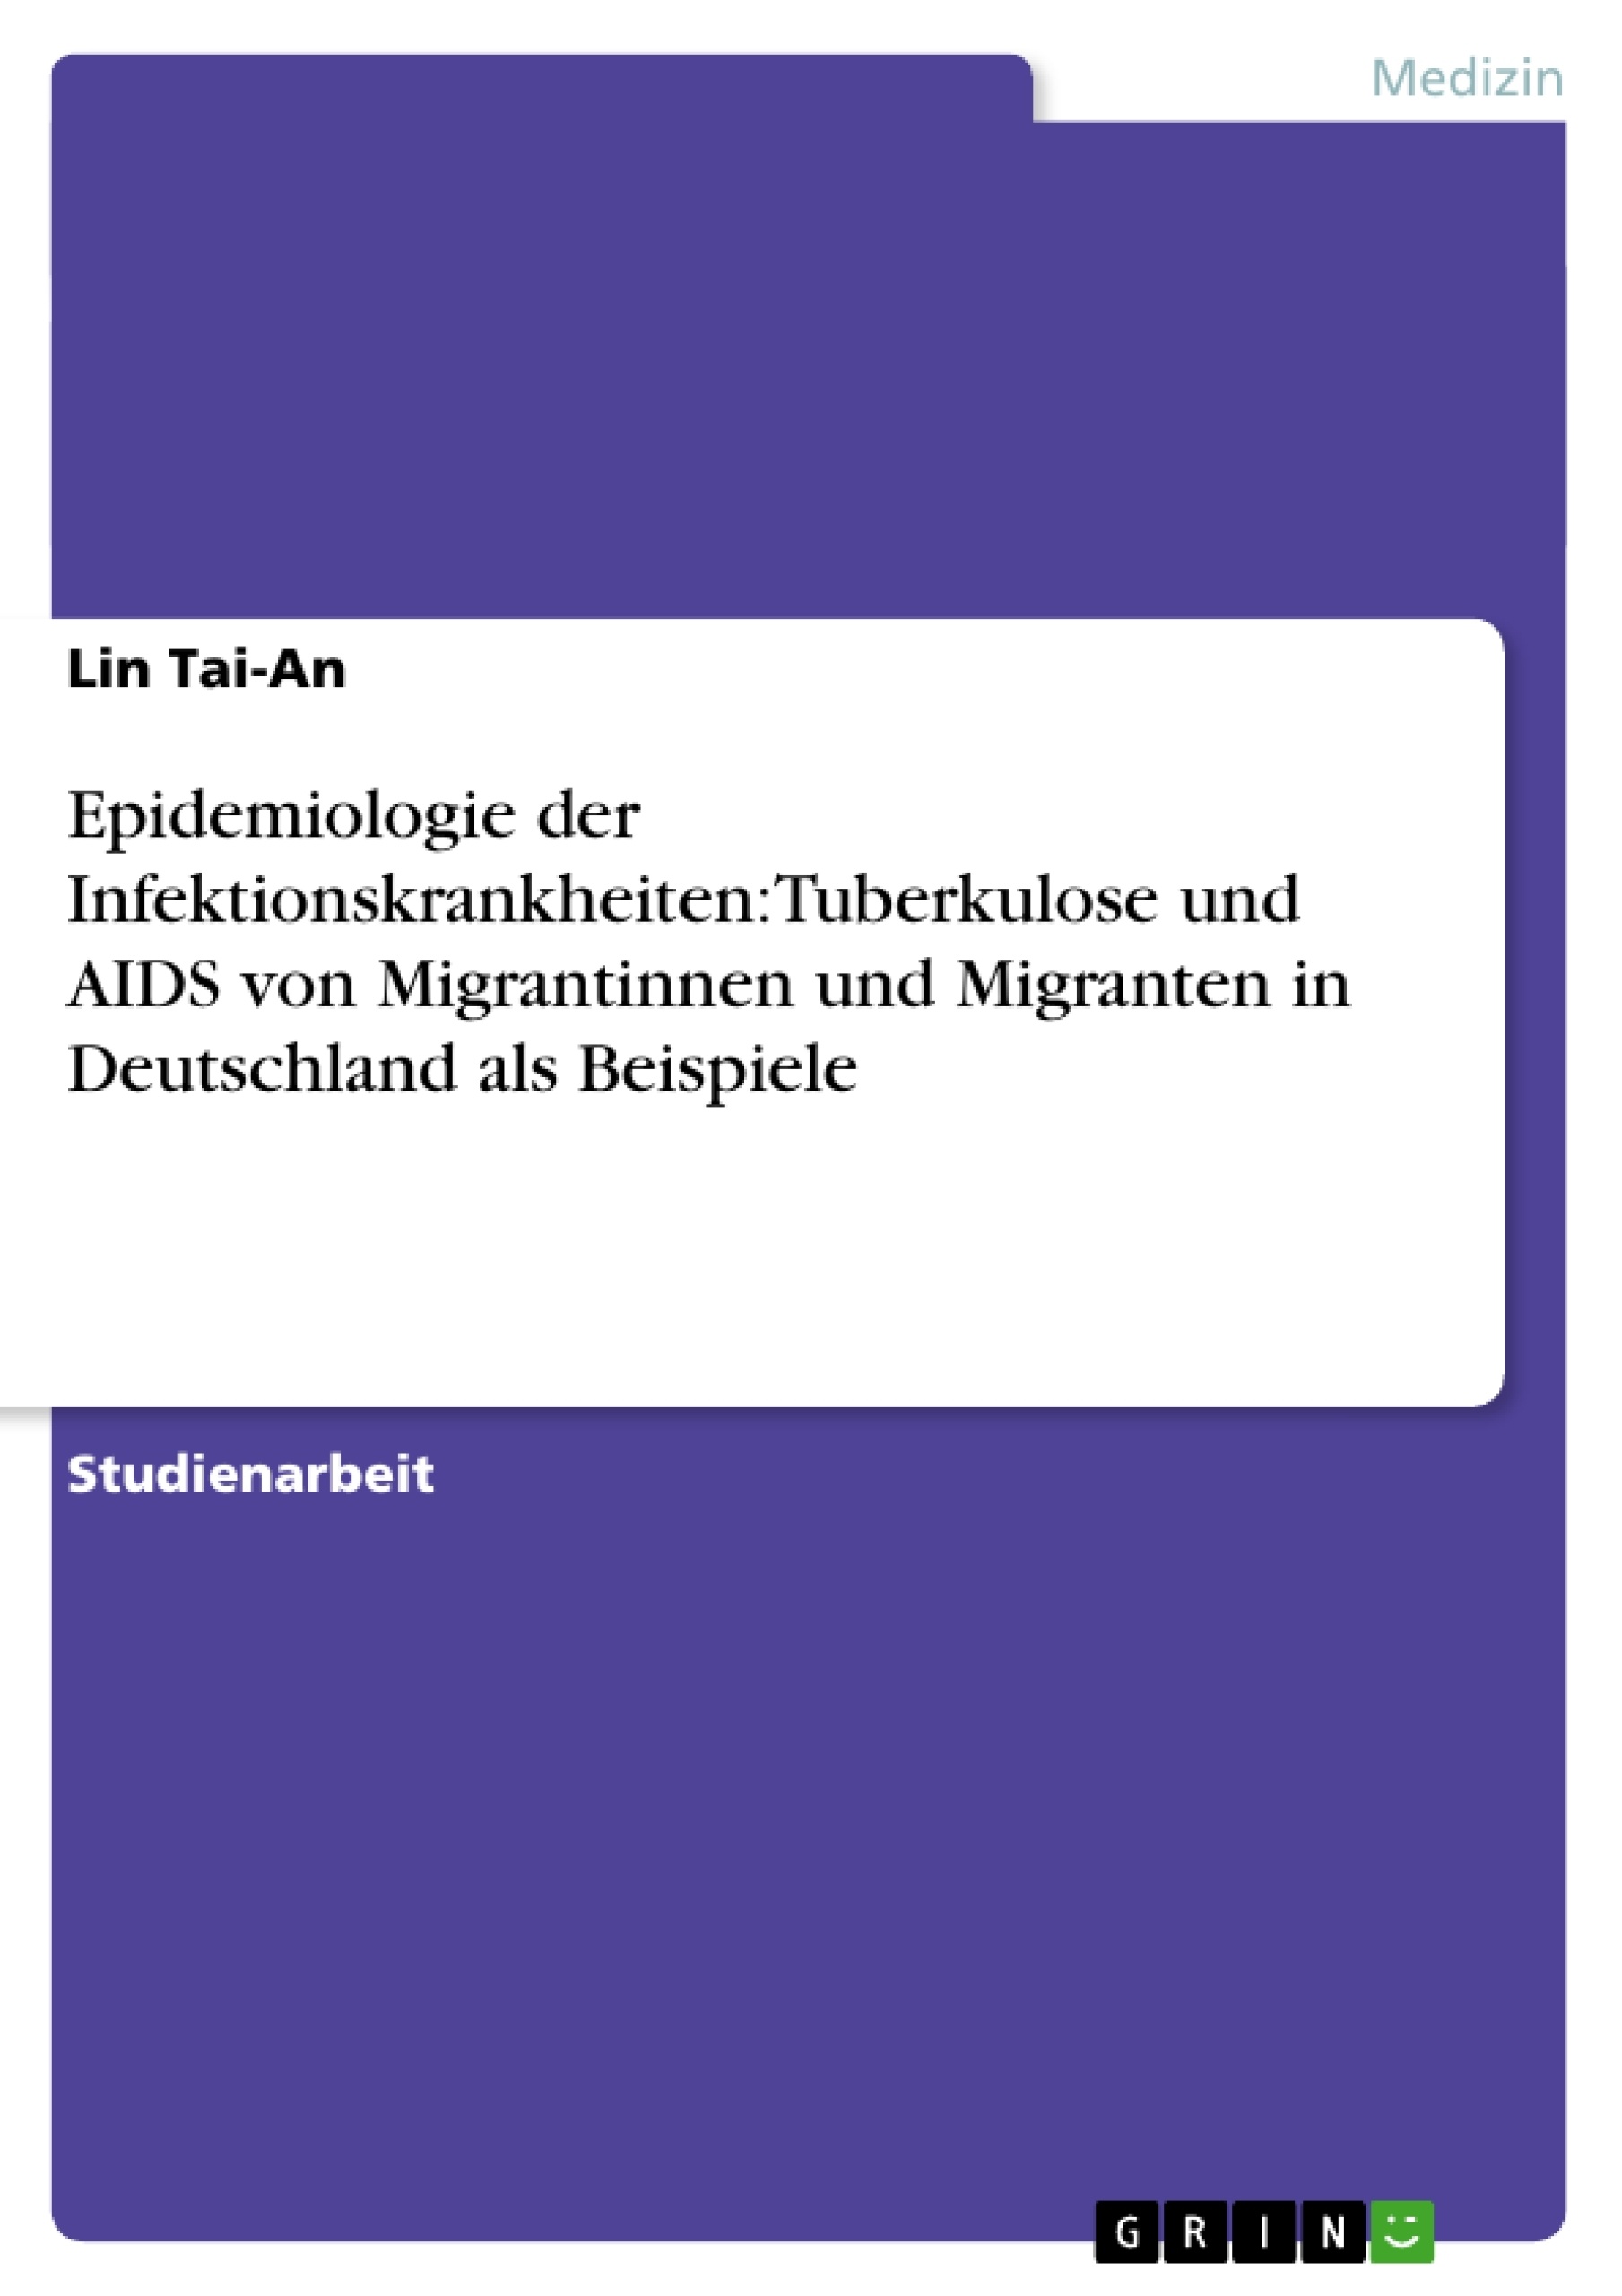 Title: Epidemiologie der Infektionskrankheiten:Tuberkulose und AIDS von Migrantinnen und Migranten in Deutschland als Beispiele